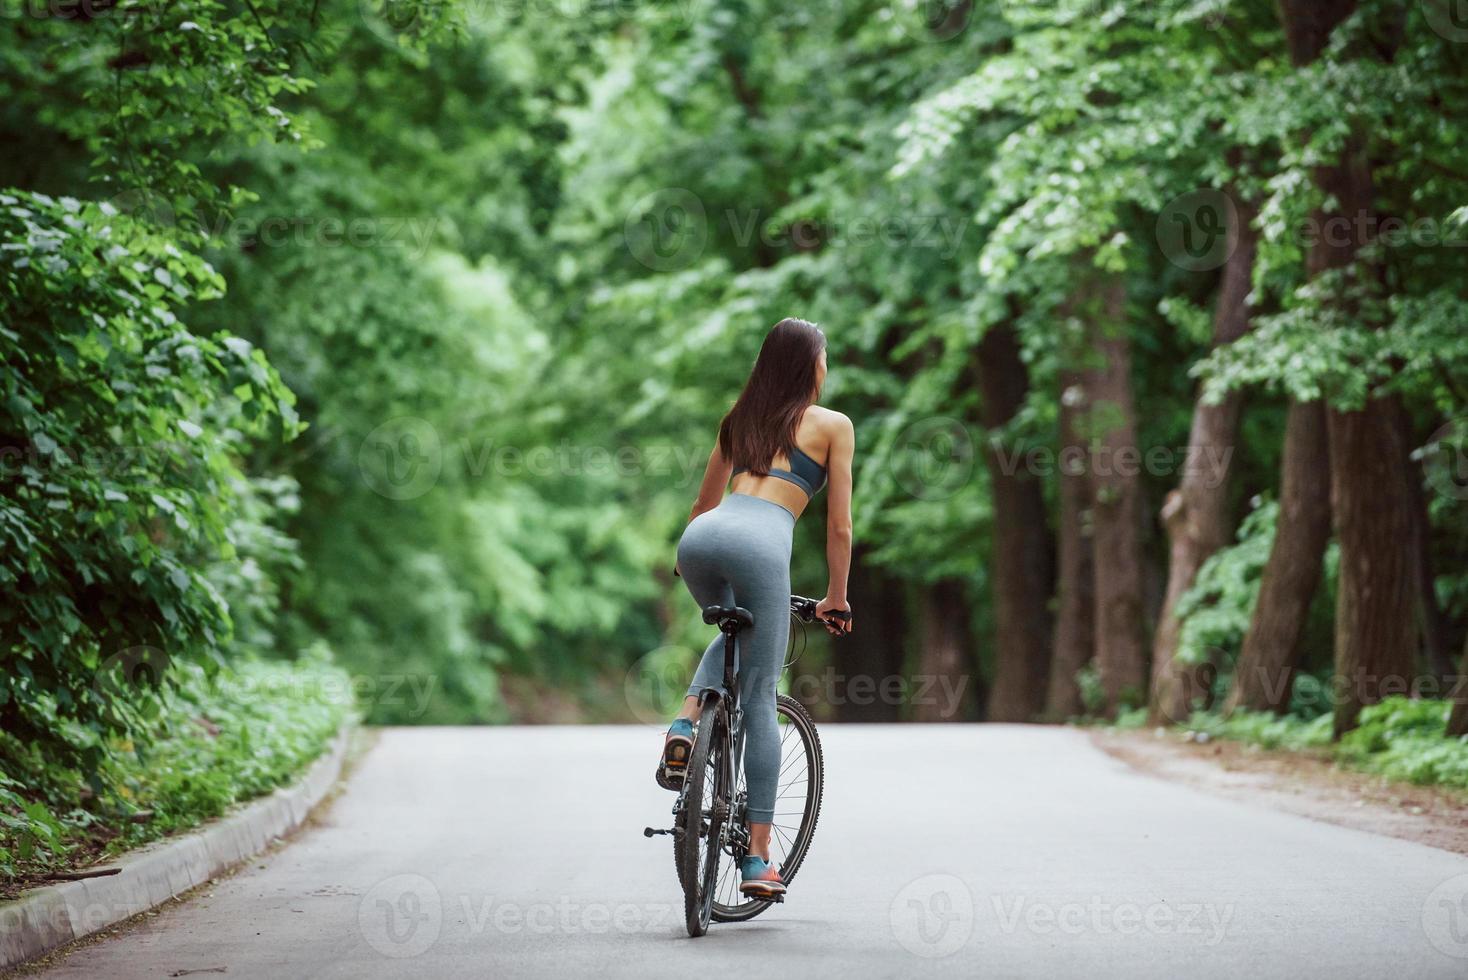 maderas preciosas. ciclista femenina en una bicicleta en una carretera asfaltada en el bosque durante el día foto